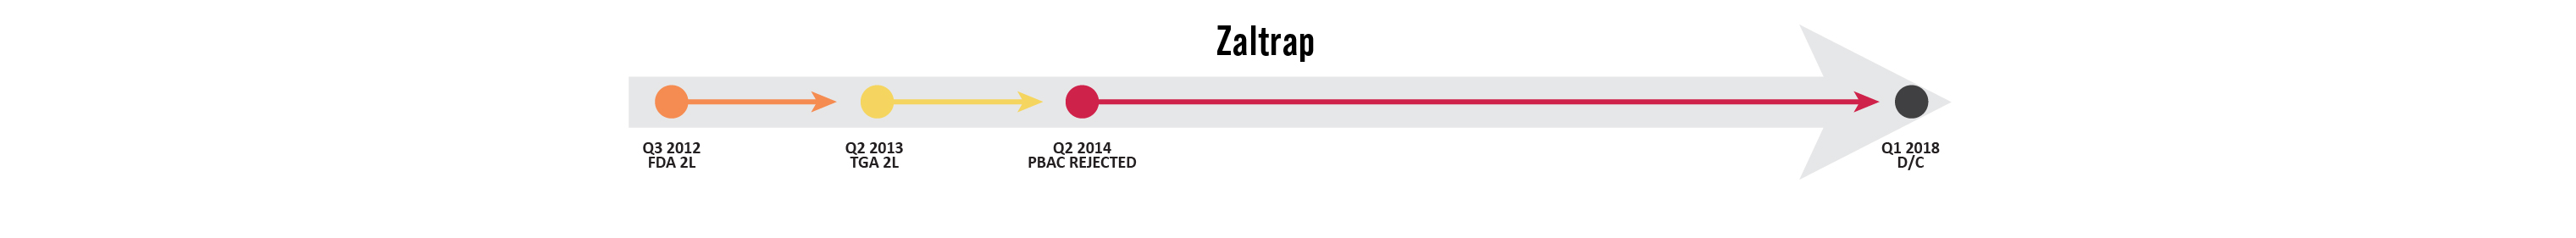 Zaltrap